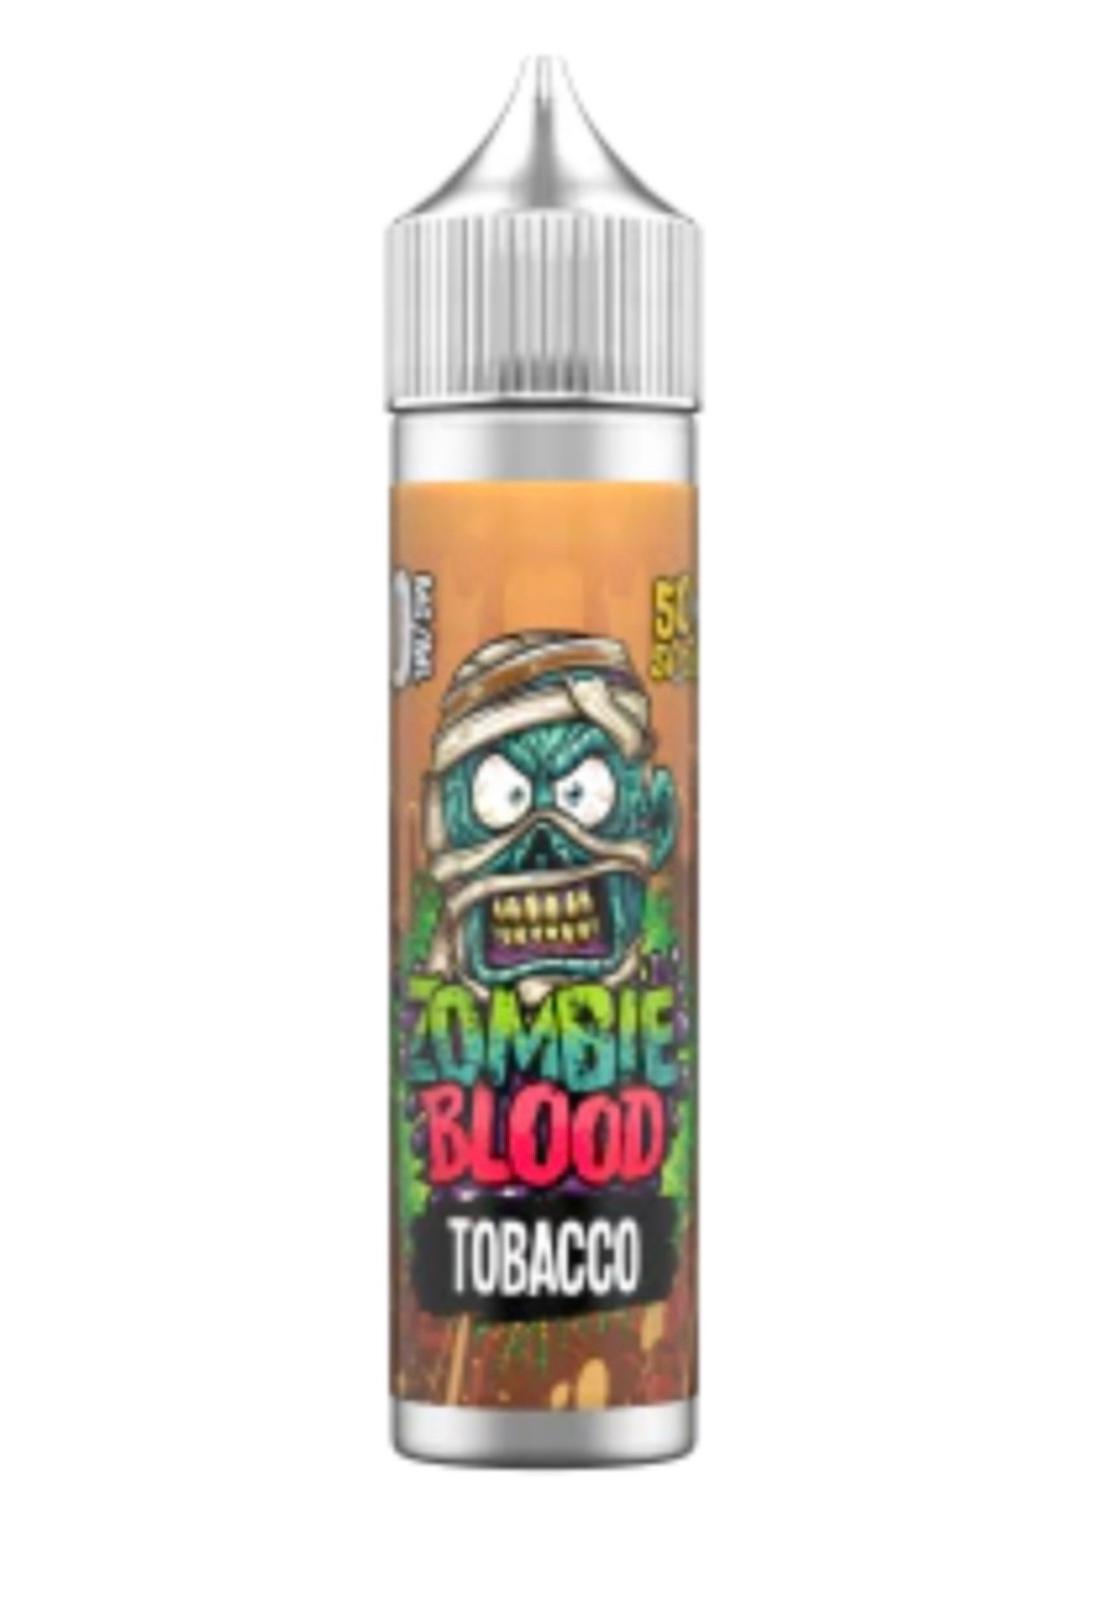 Tobacco Zombie Blood E-liquid 50ml Shortfill